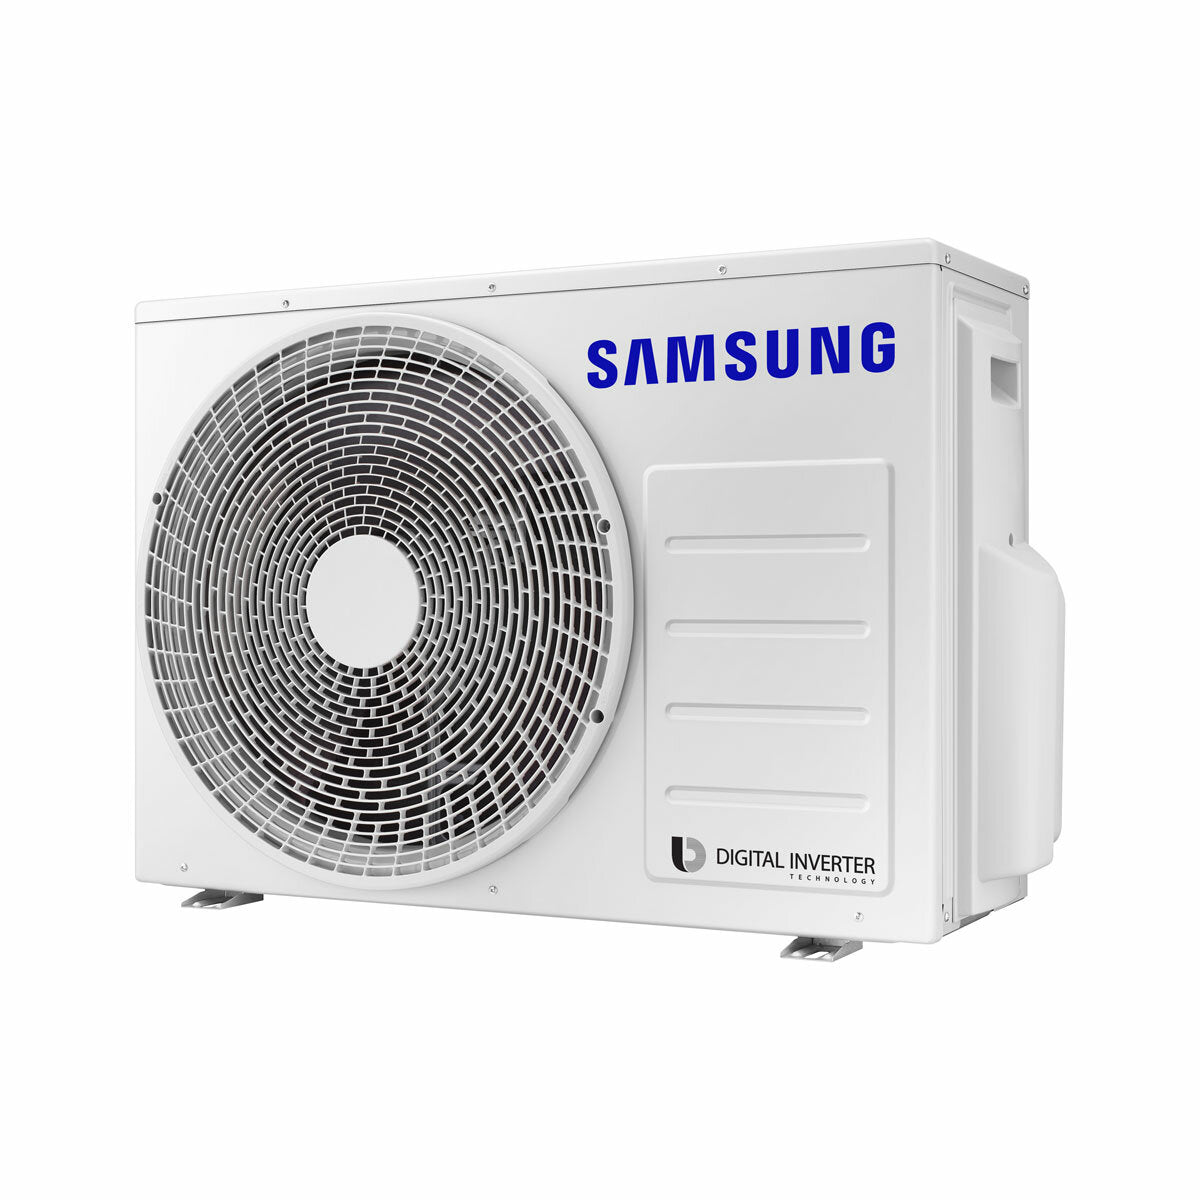 Samsung Cebu Wi-Fi Trial Split Klimaanlage 7000 + 9000 + 9000 BTU Wechselrichter A++ WLAN Außengerät 5,2 kW